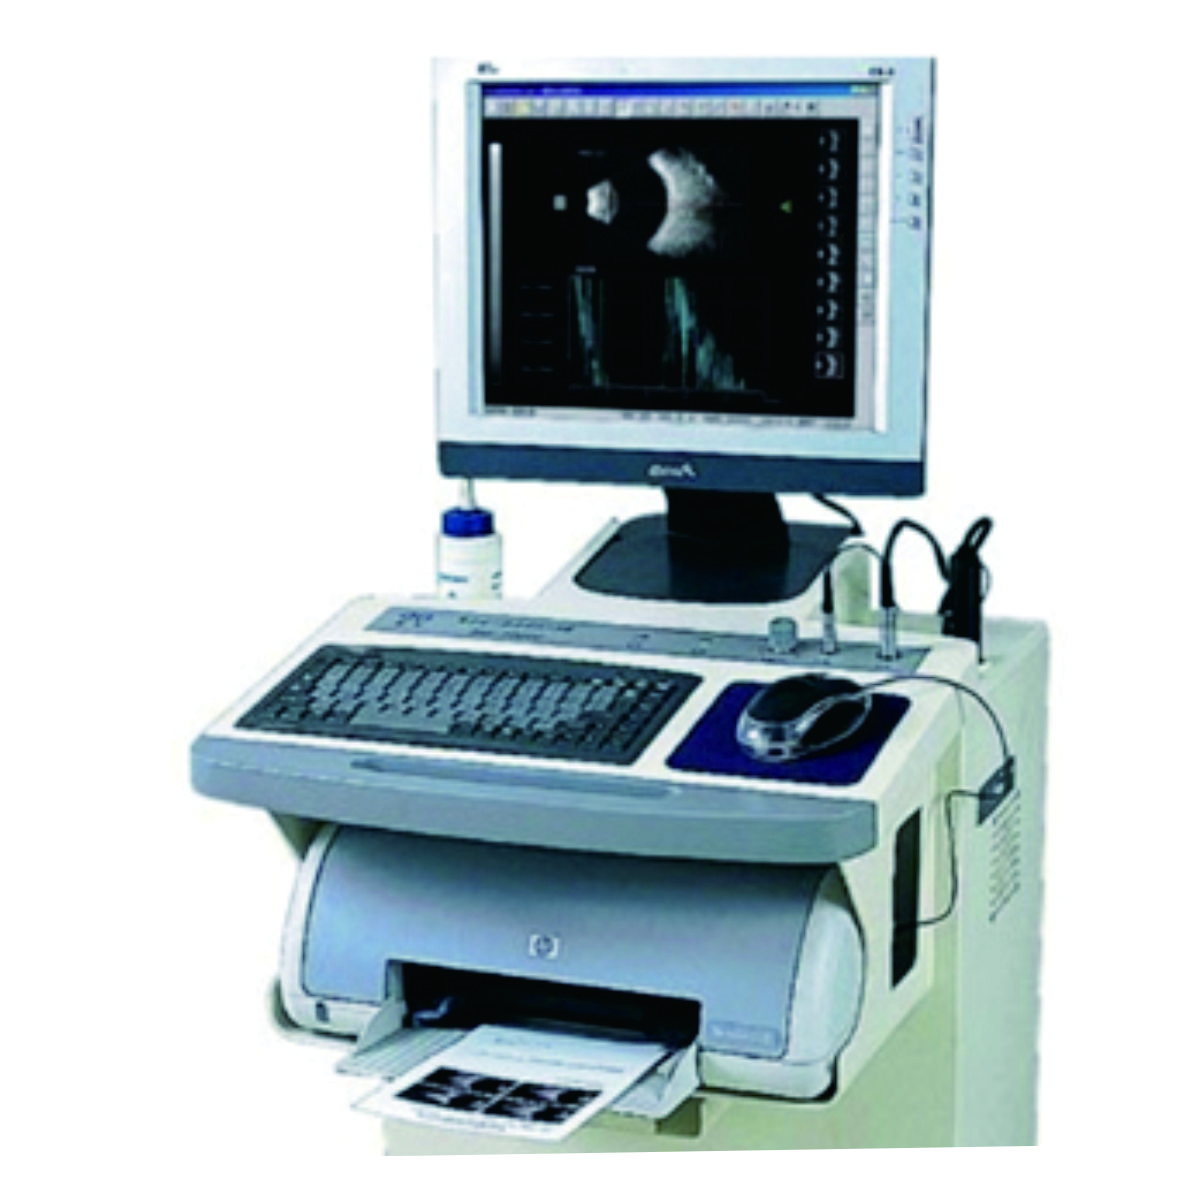 CAS-2000BER (MODEL B) A/B scan